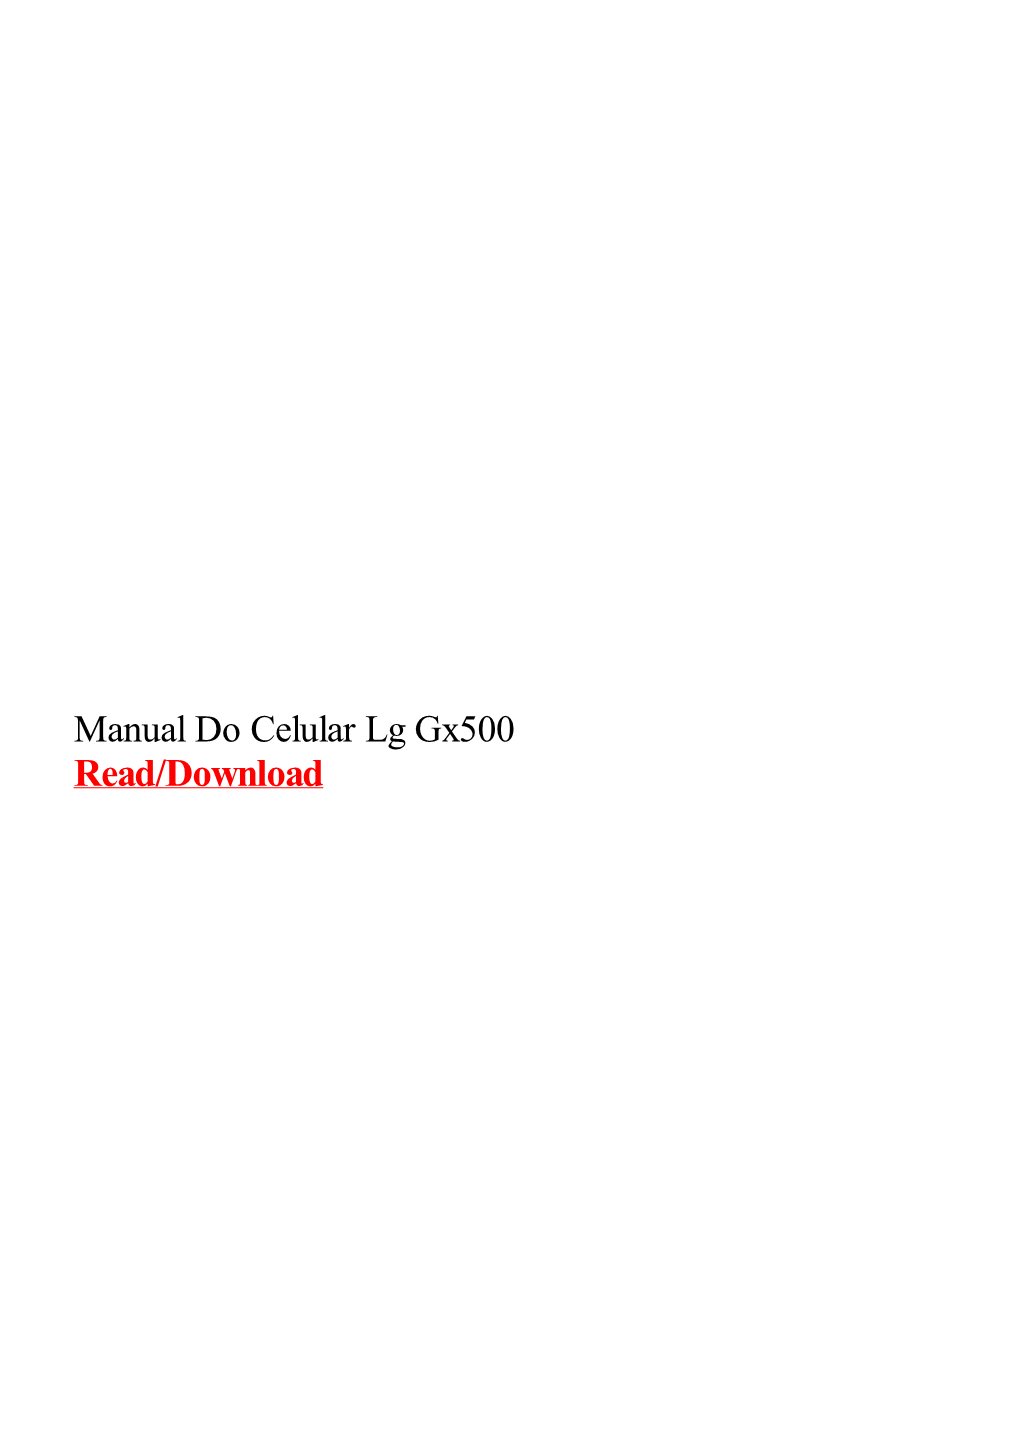 Manual Do Celular Lg Gx500